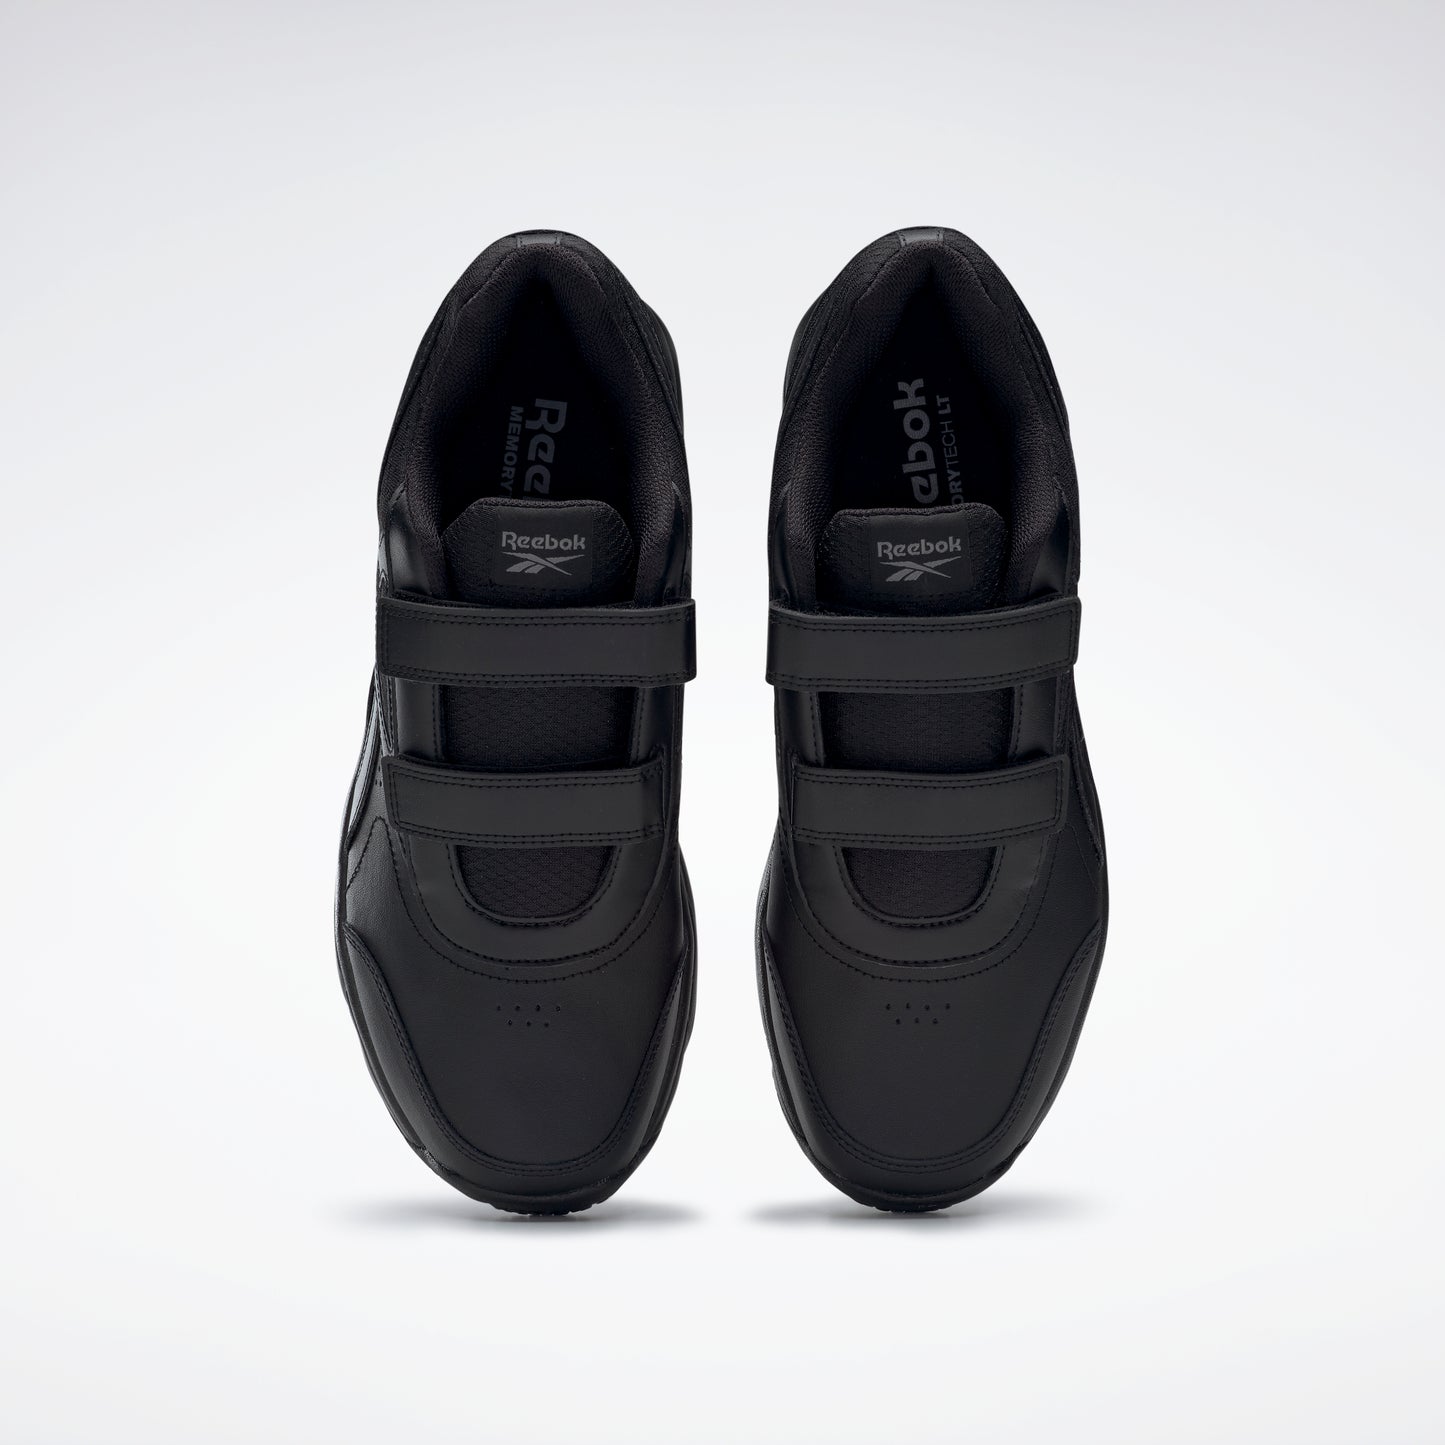 Chaussures Reebok Footwear Hommes Work N Cushion 4.0 Noir/Cdgry5/Noir